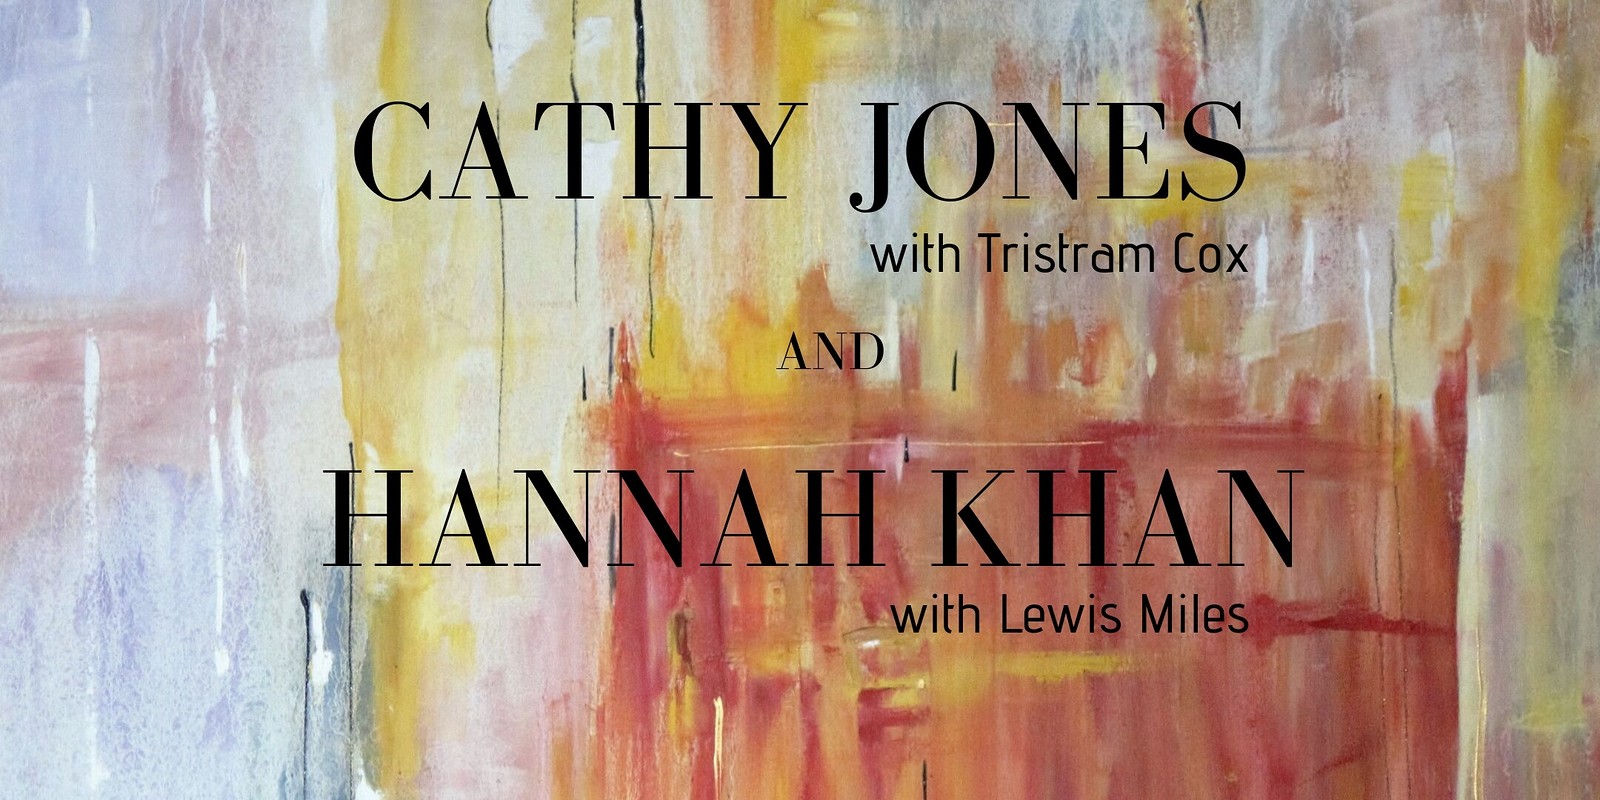 Cathy Jones & Hannah khan at The Bristol Fringe